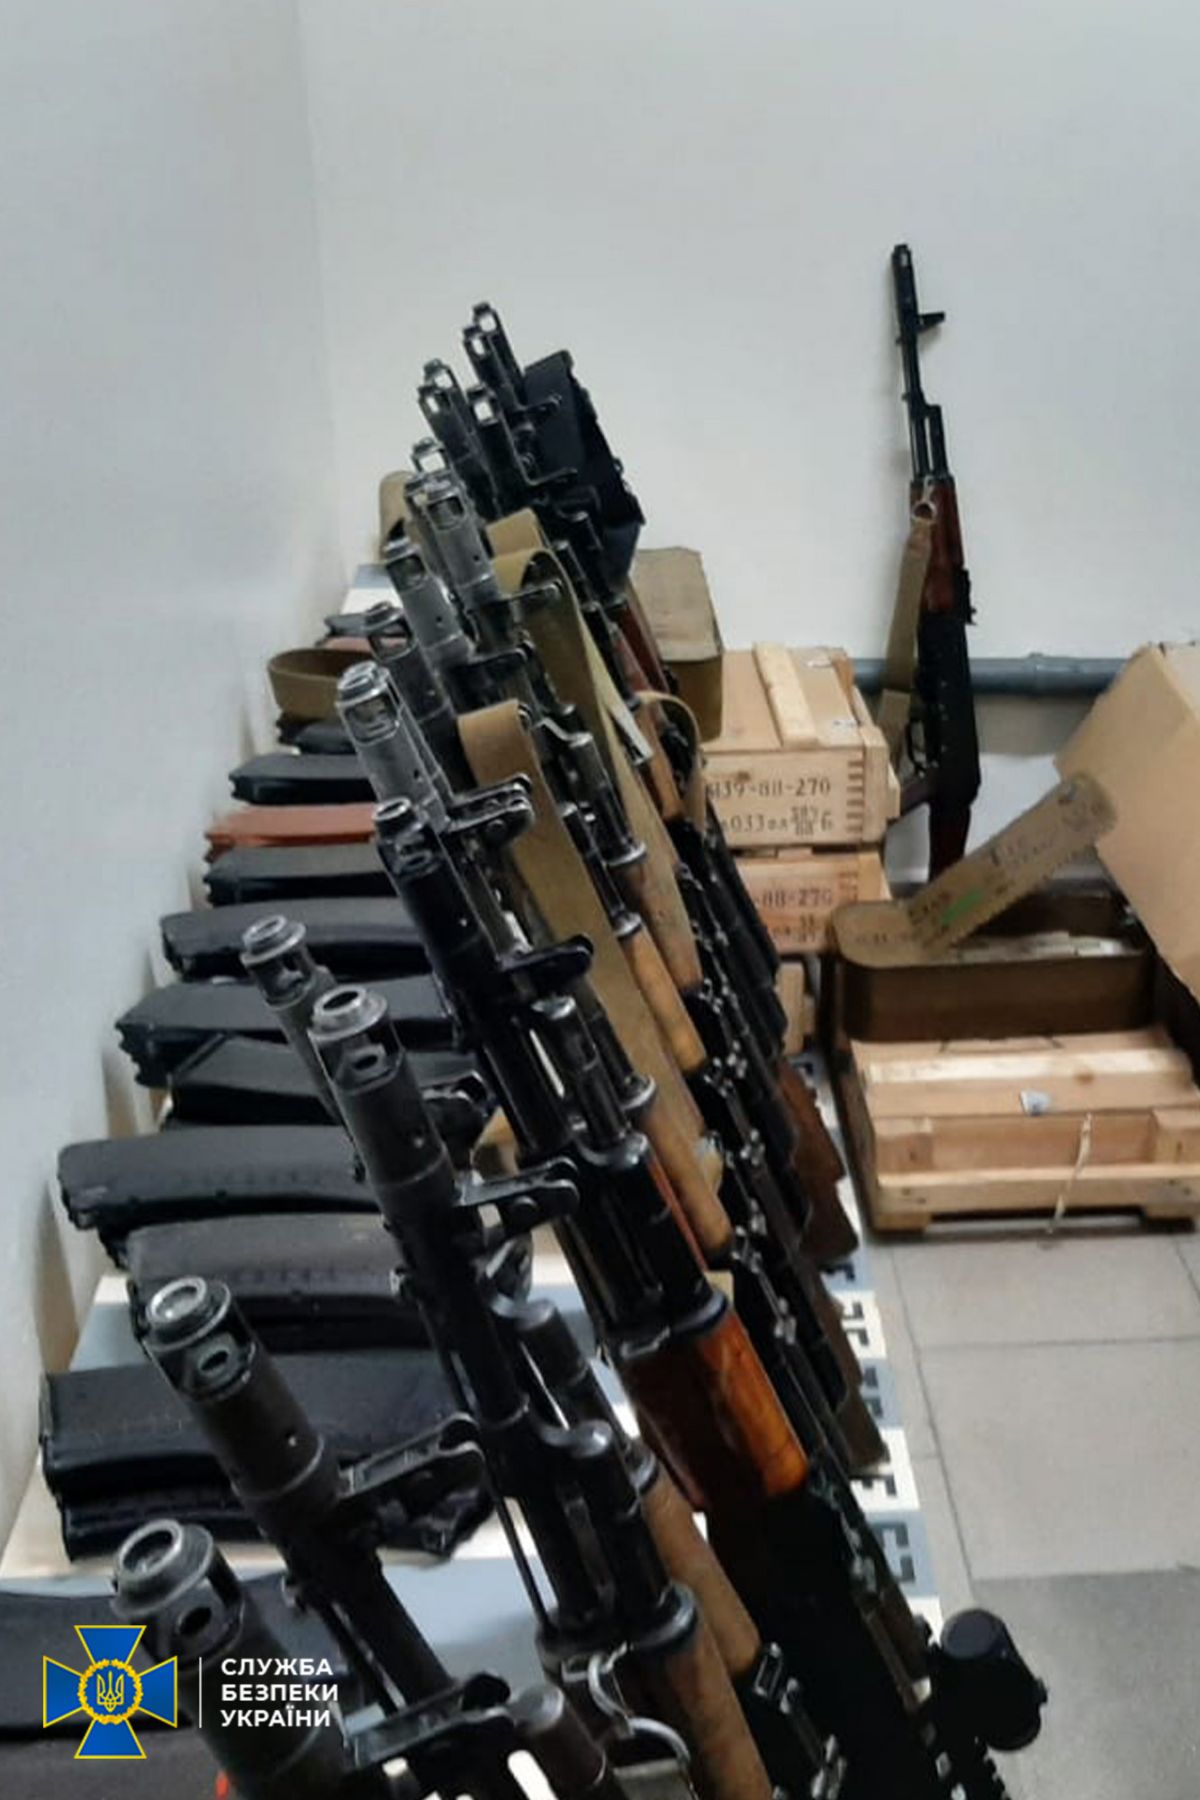 арсенал незареєстрованої зброї в Києві на фото 1